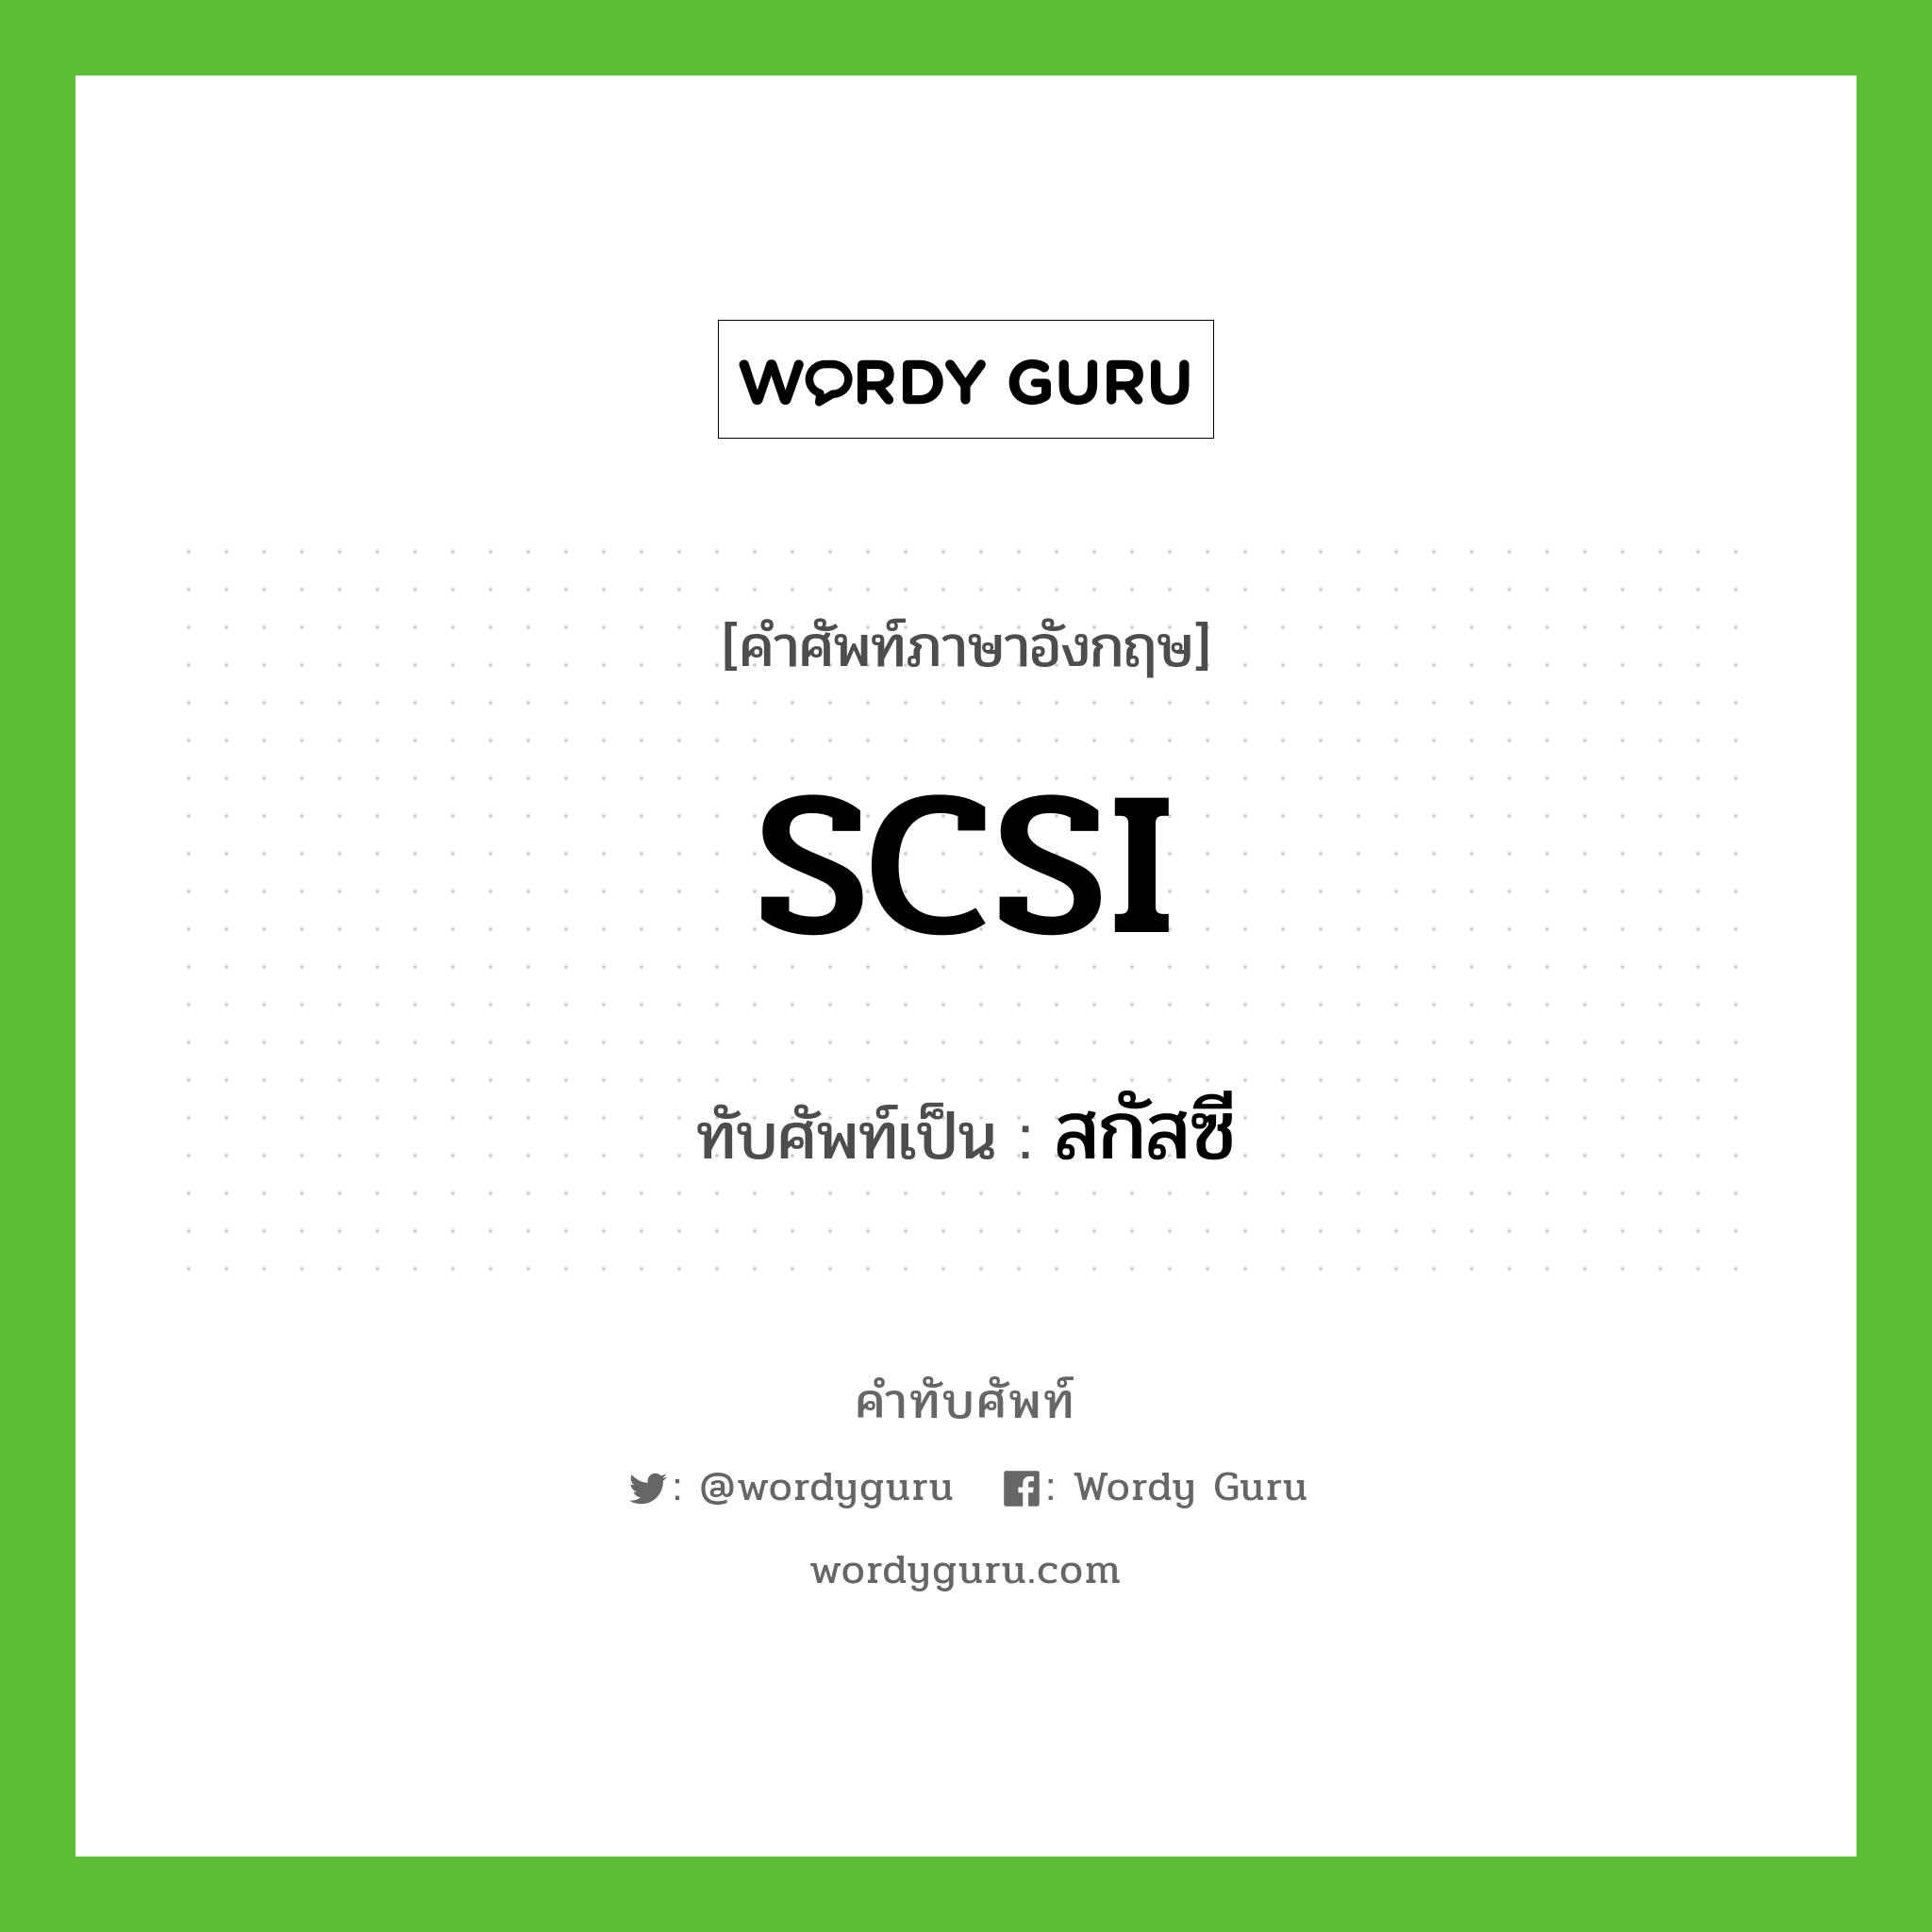 SCSI เขียนเป็นคำไทยว่าอะไร?, คำศัพท์ภาษาอังกฤษ SCSI ทับศัพท์เป็น สกัสซี